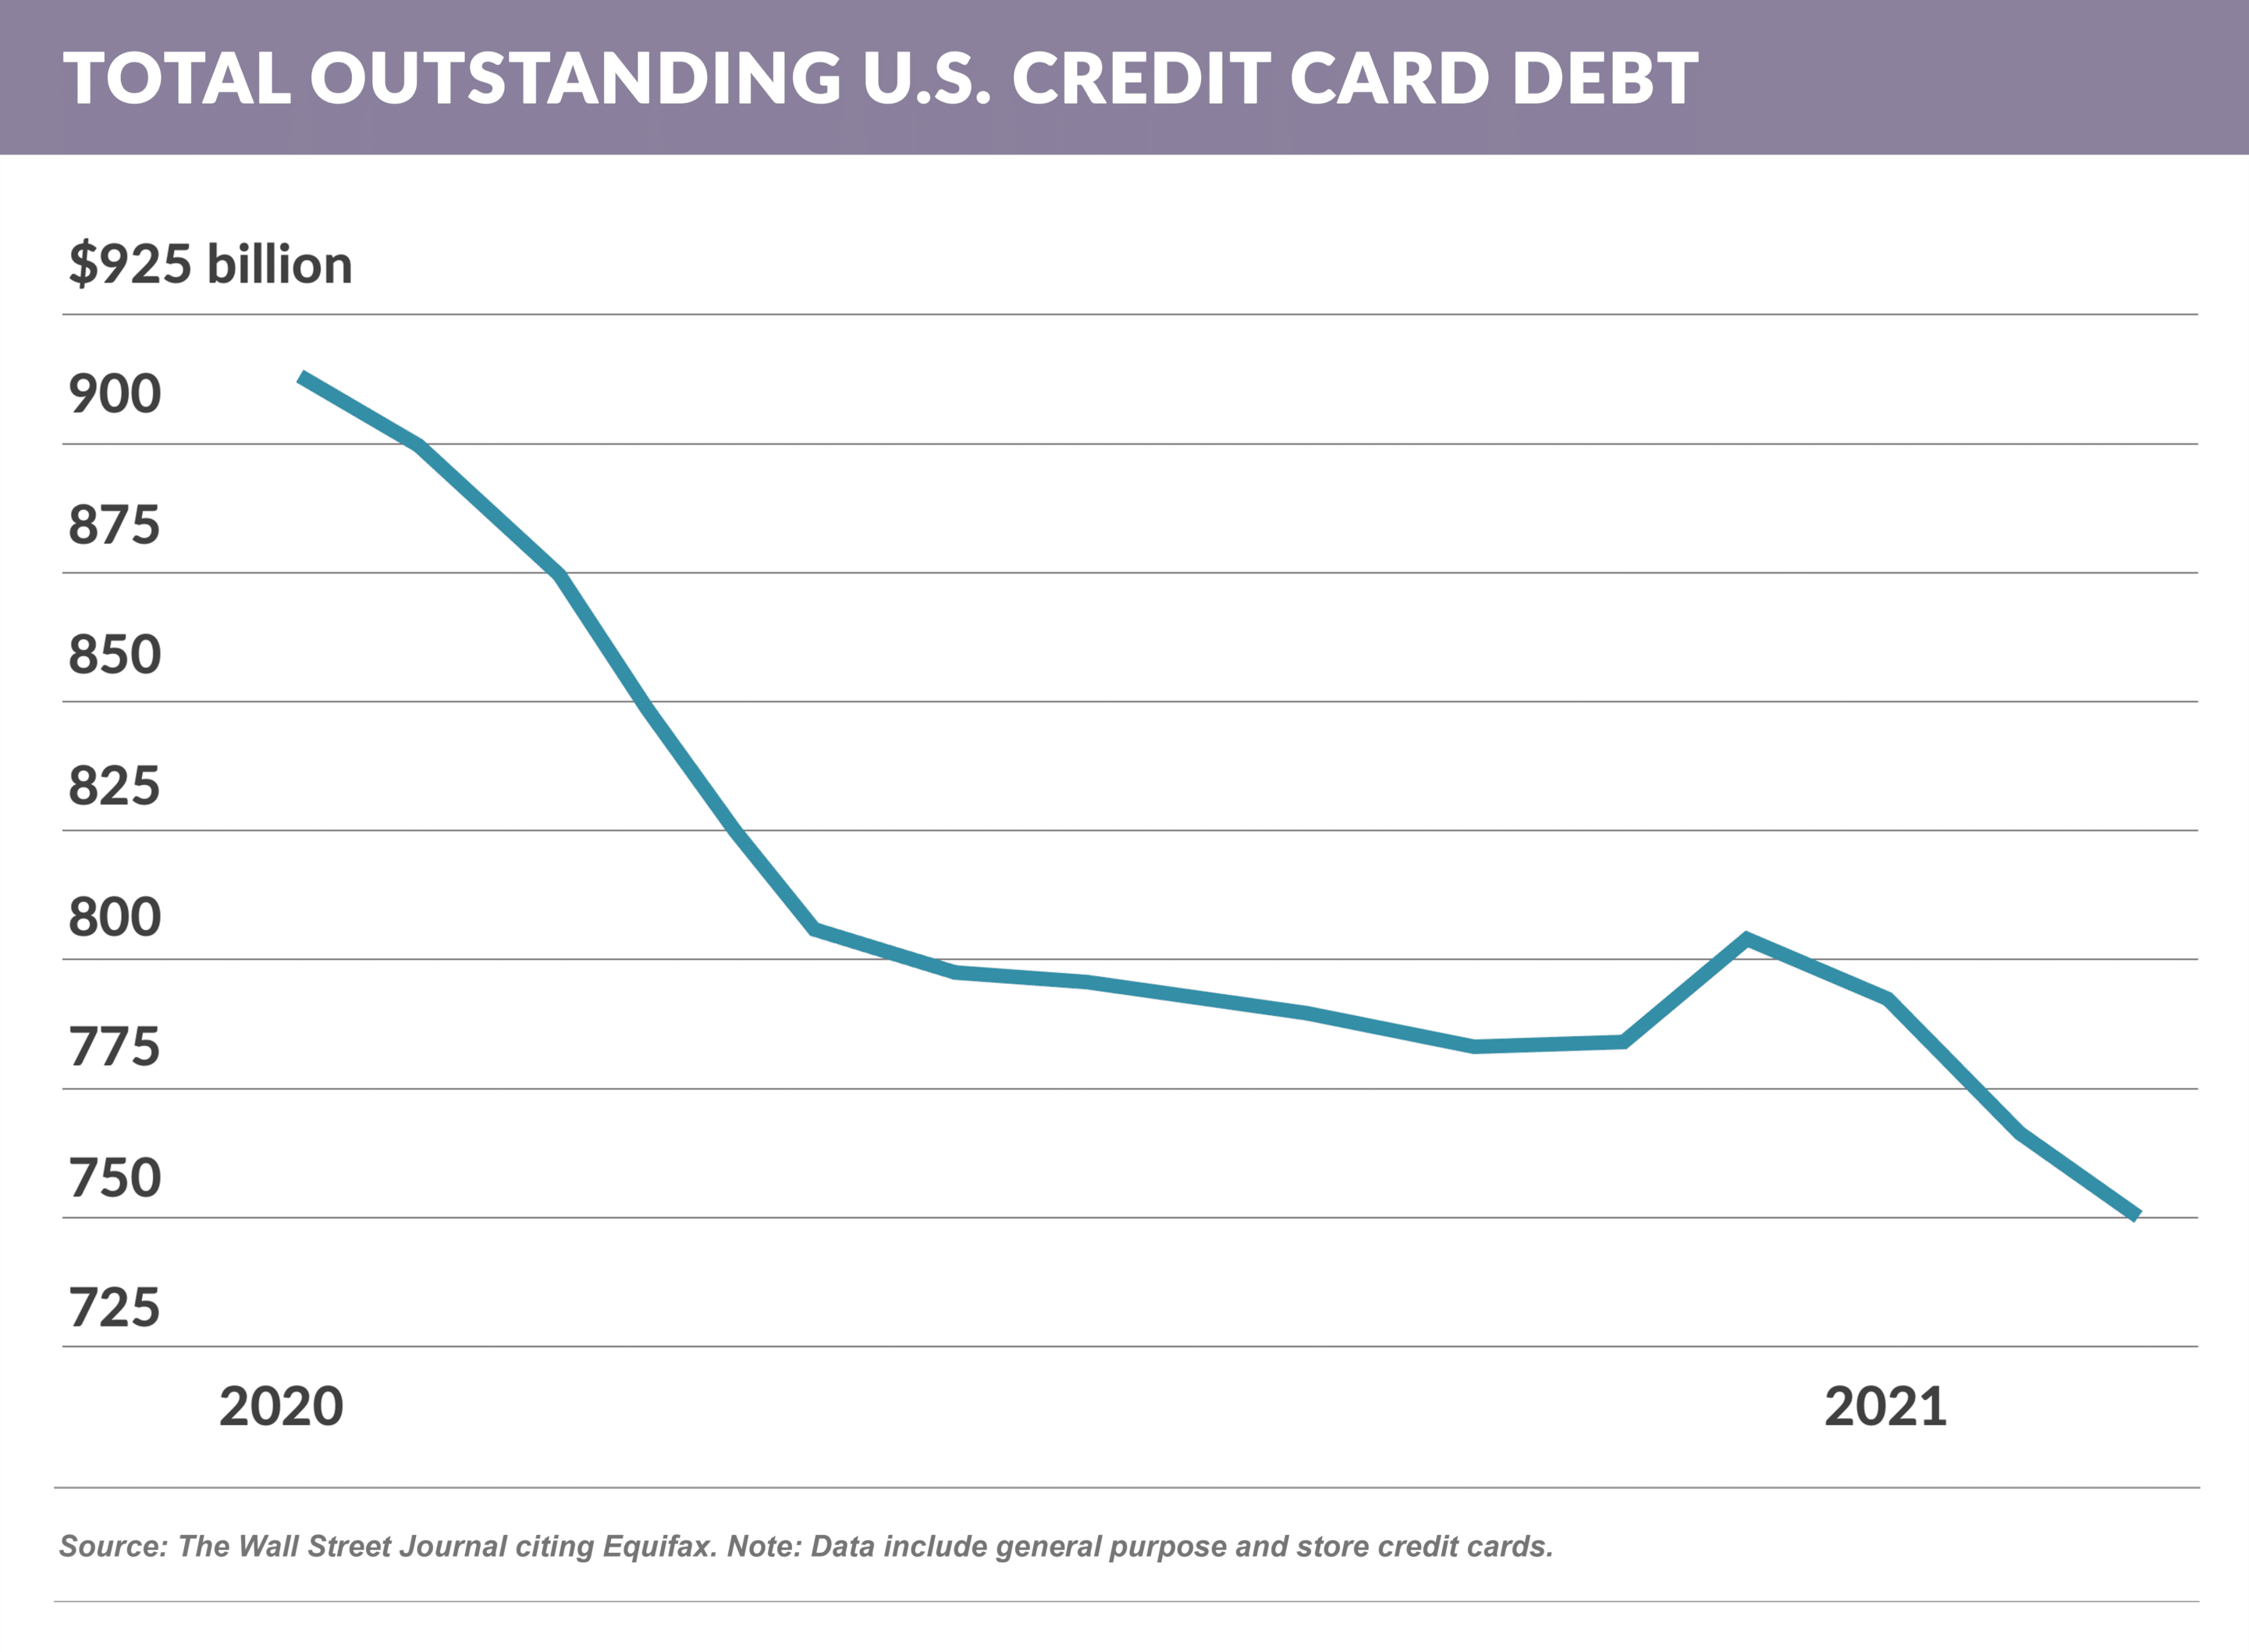 Total outstanding U.S. credit card debt